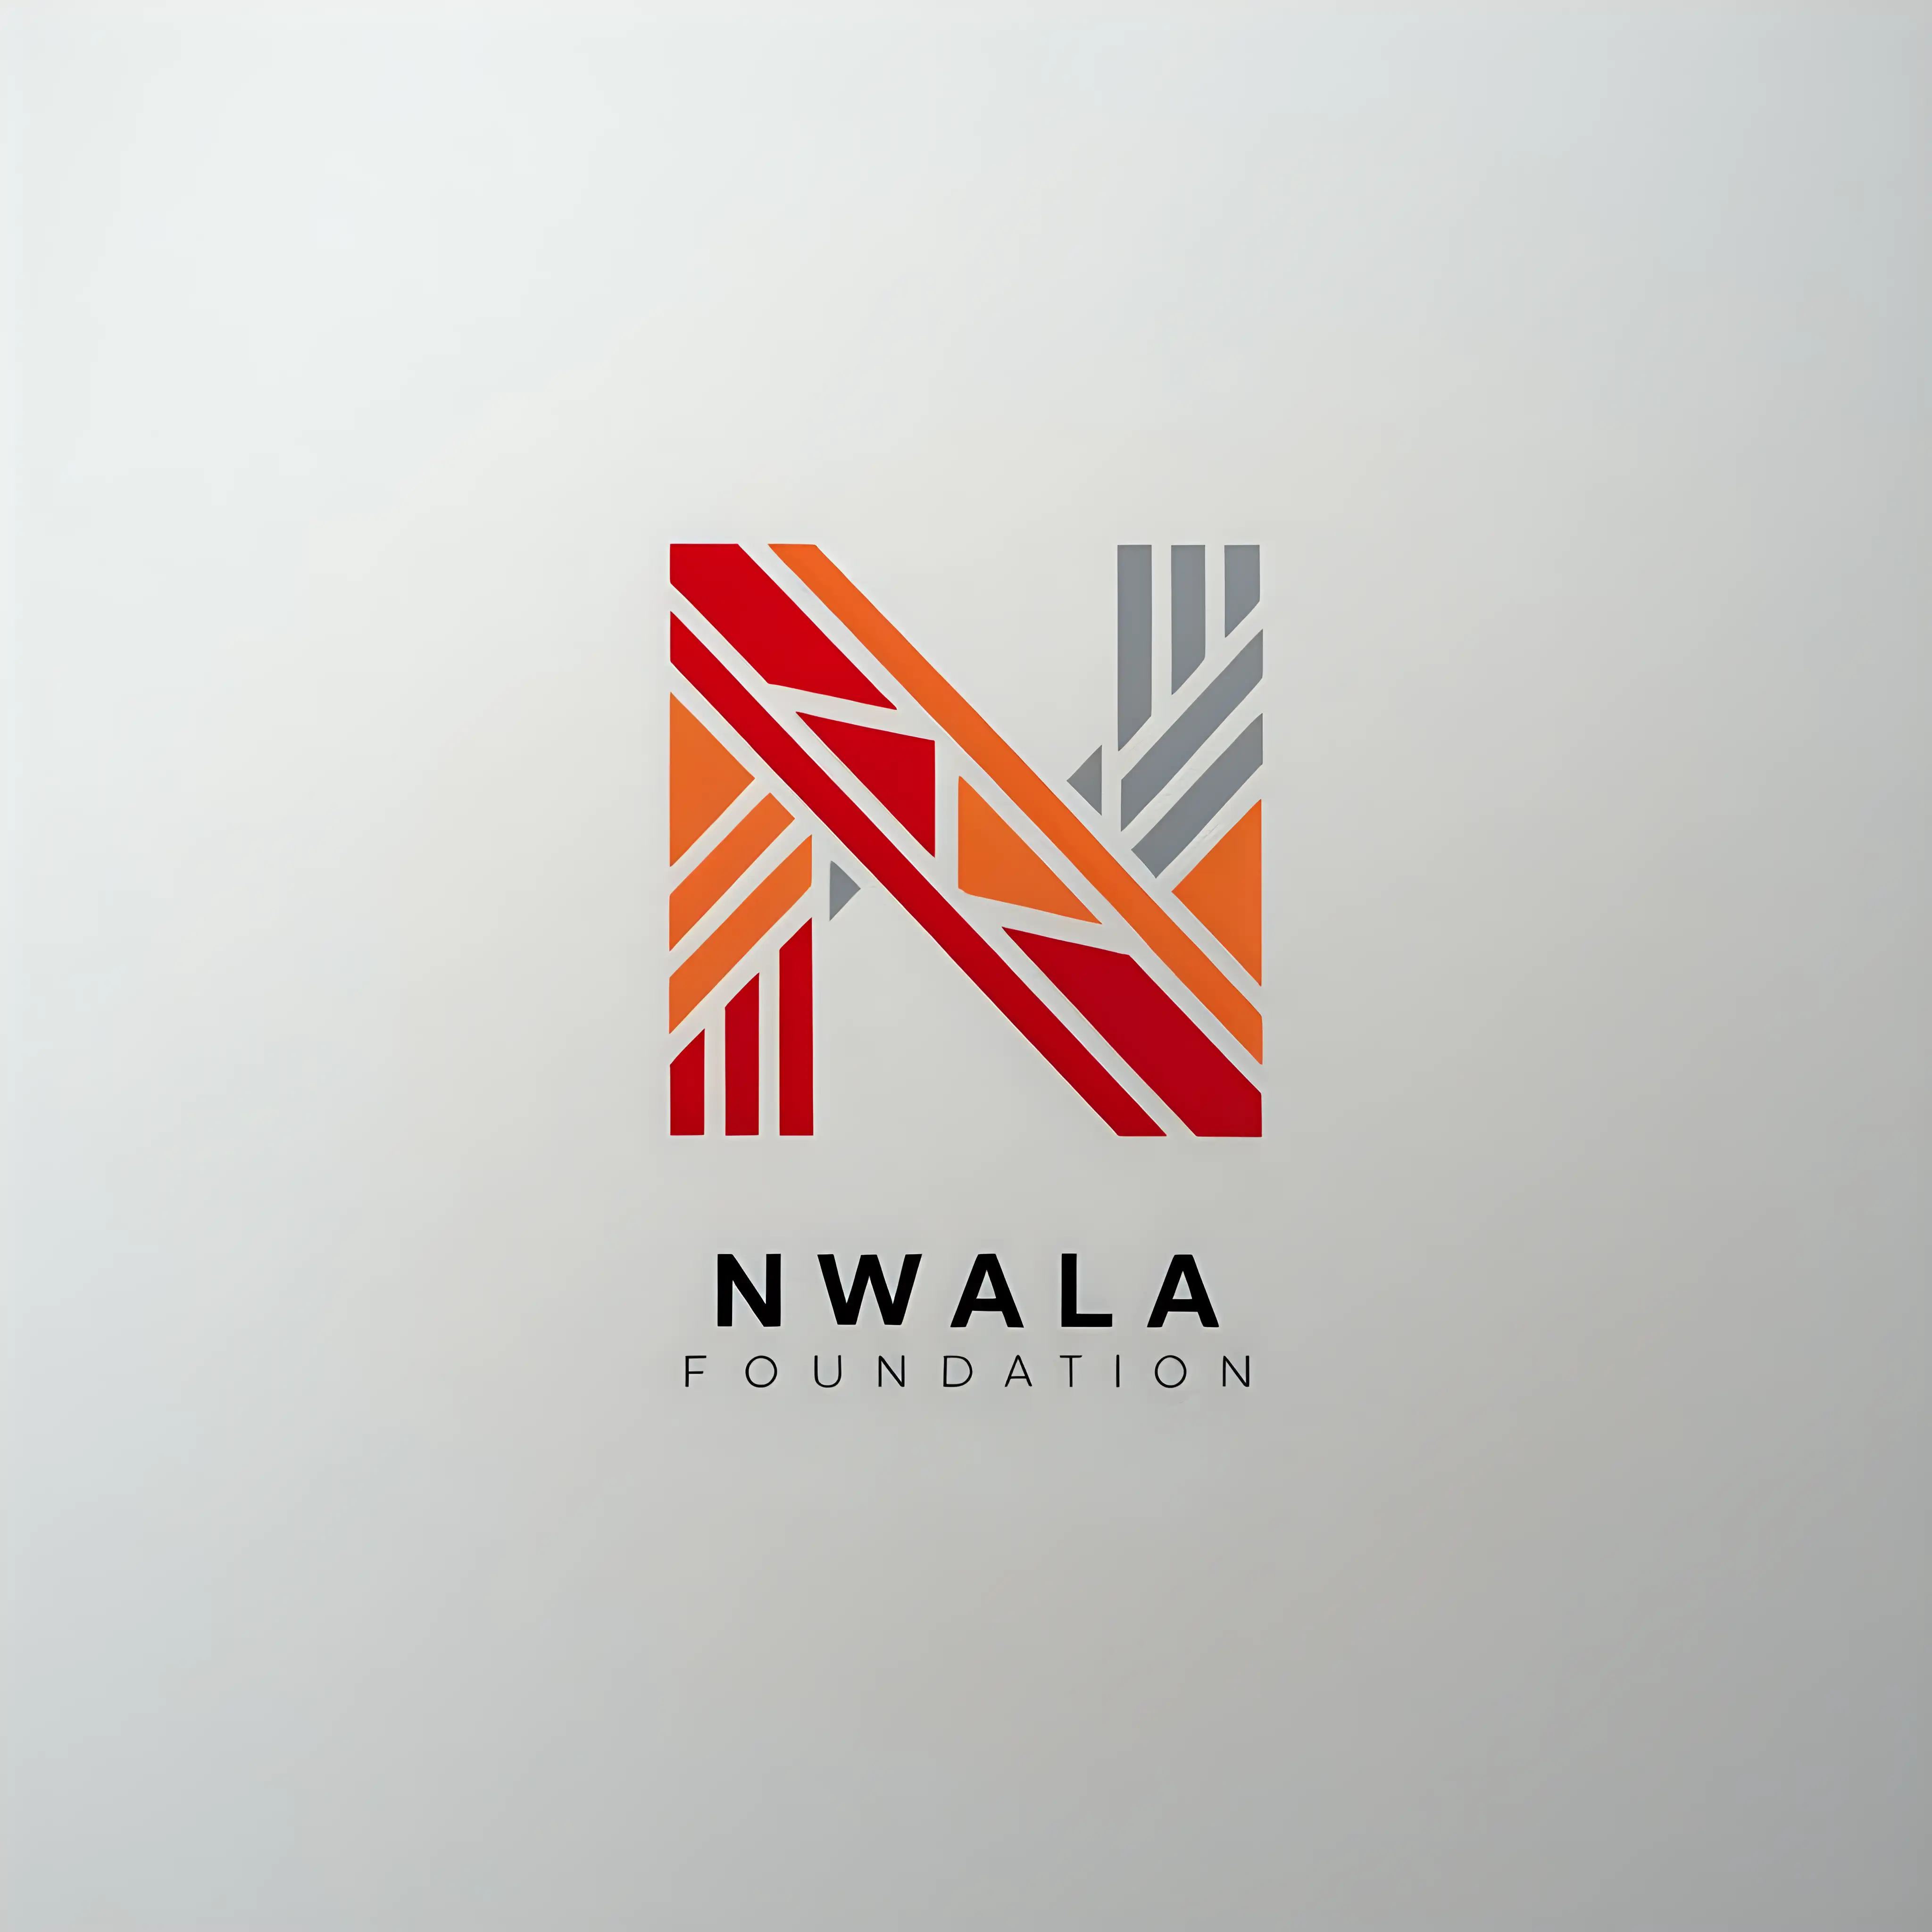 Minimalistic Red and Orange Logo for Nwala Foundation Writers Organization